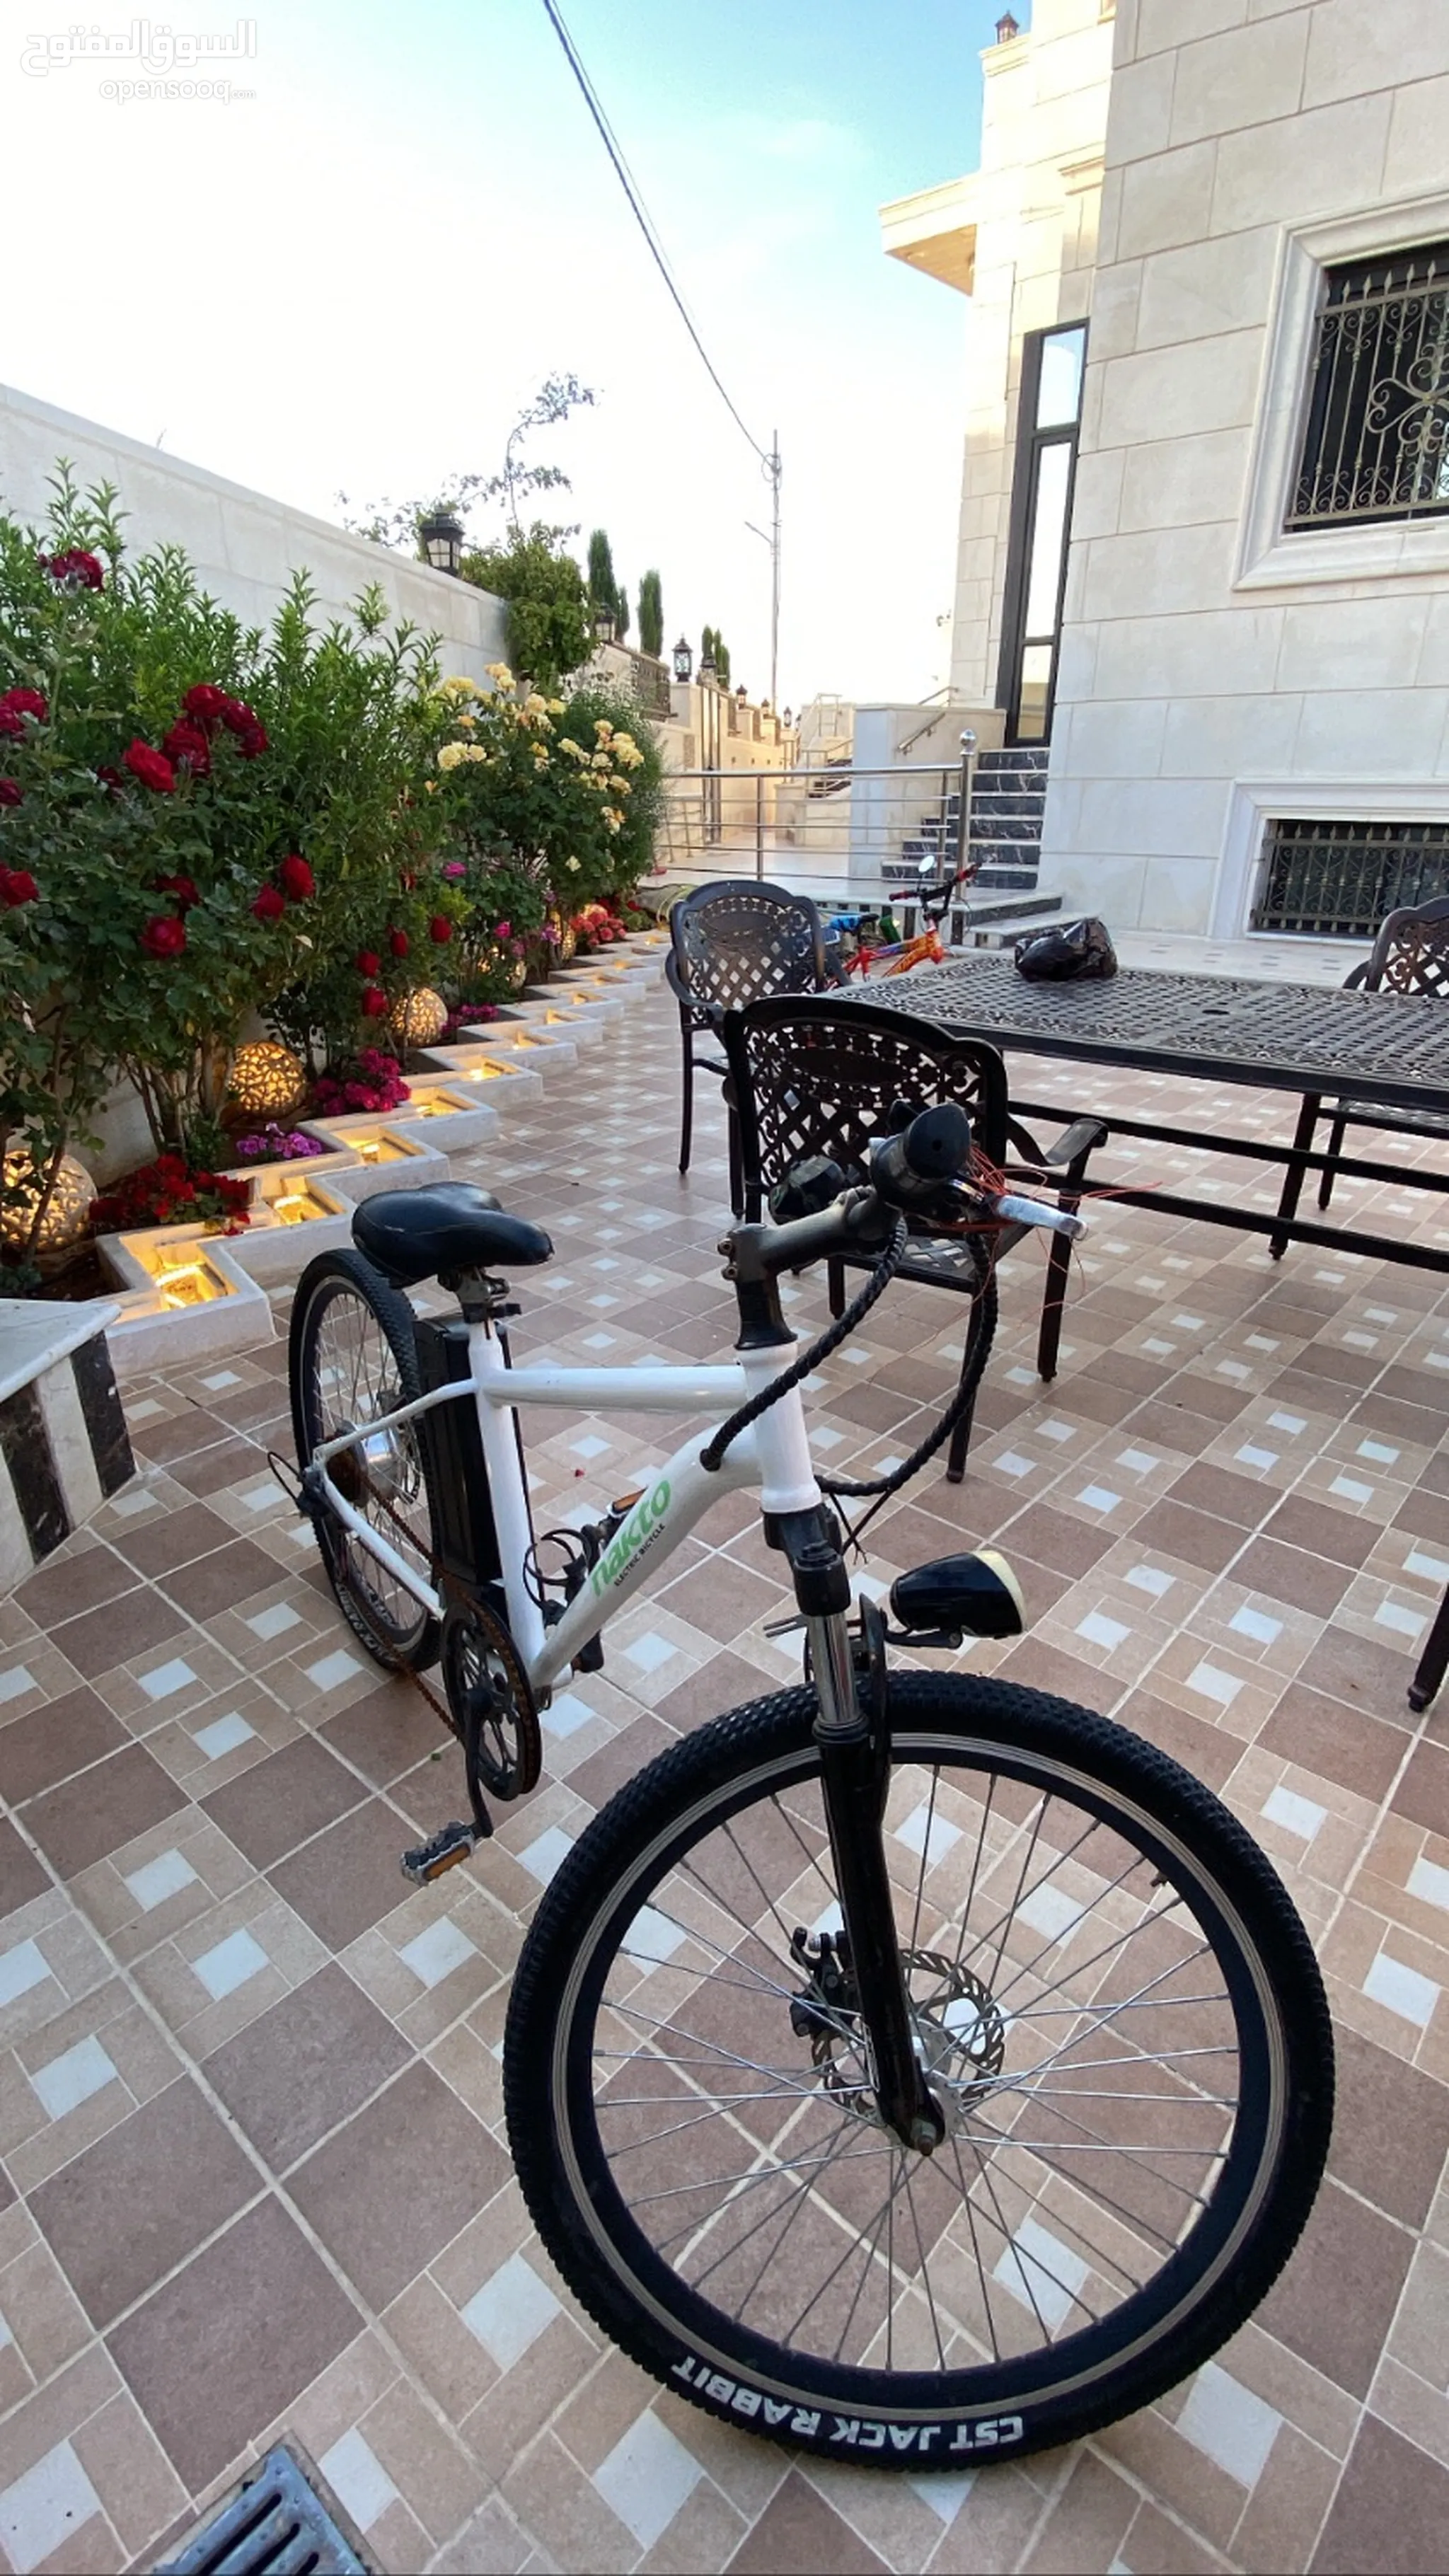 دراجات كهربائية للبيع في الأردن - دراجة كهربائية للكبار والصغار : أفضل سعر  | السوق المفتوح